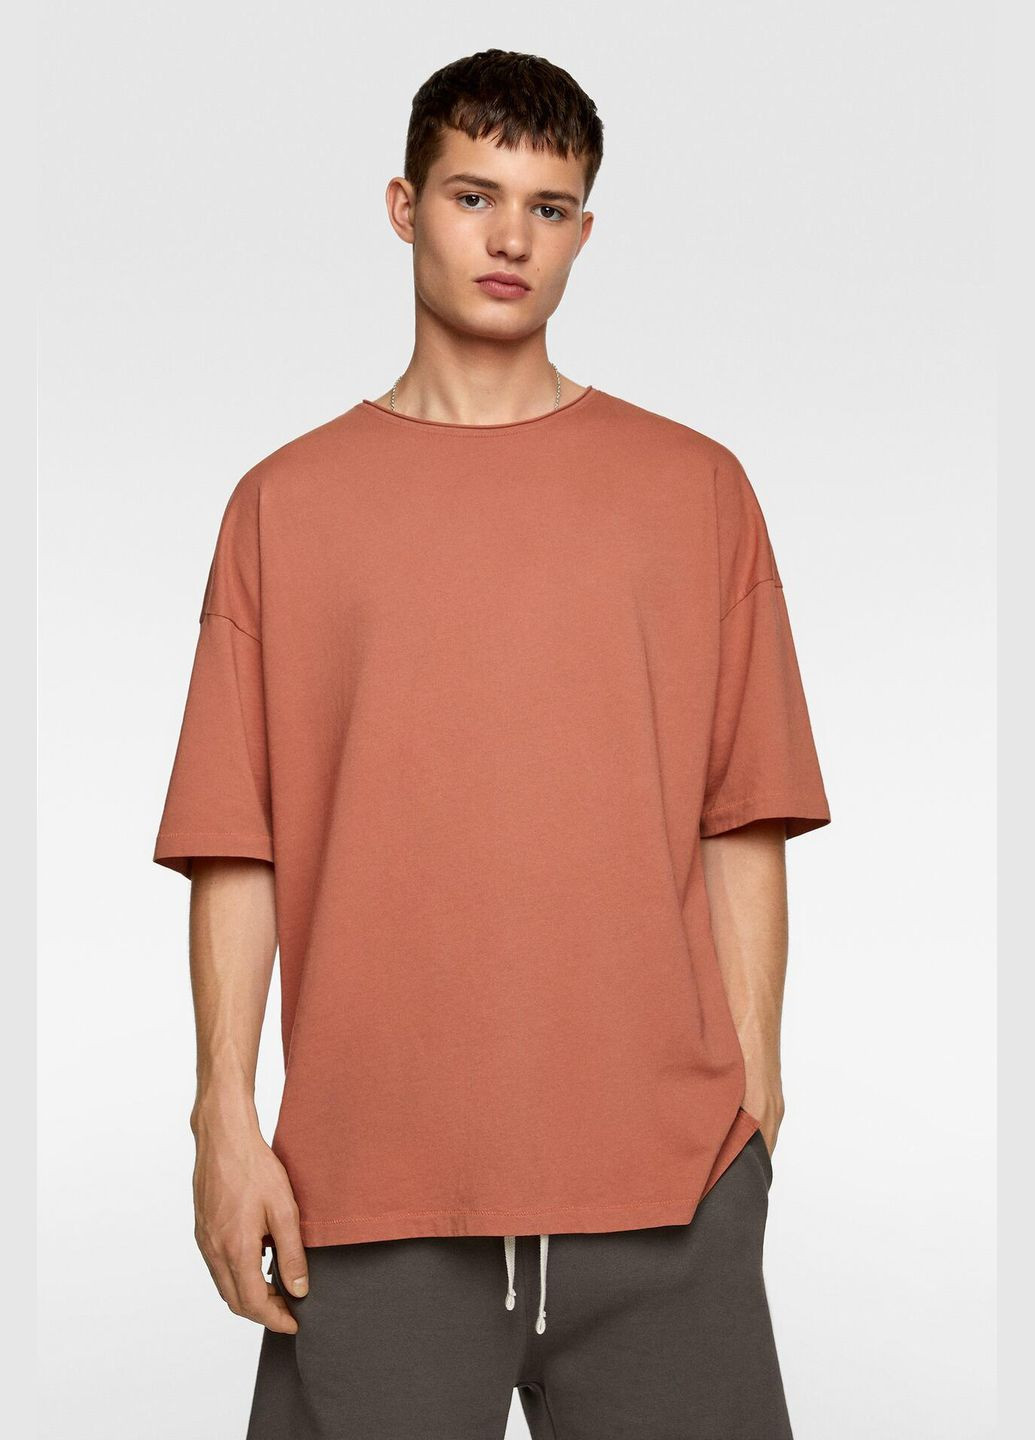 Светло-оранжевая футболка,бледно-кирпичный, Zara